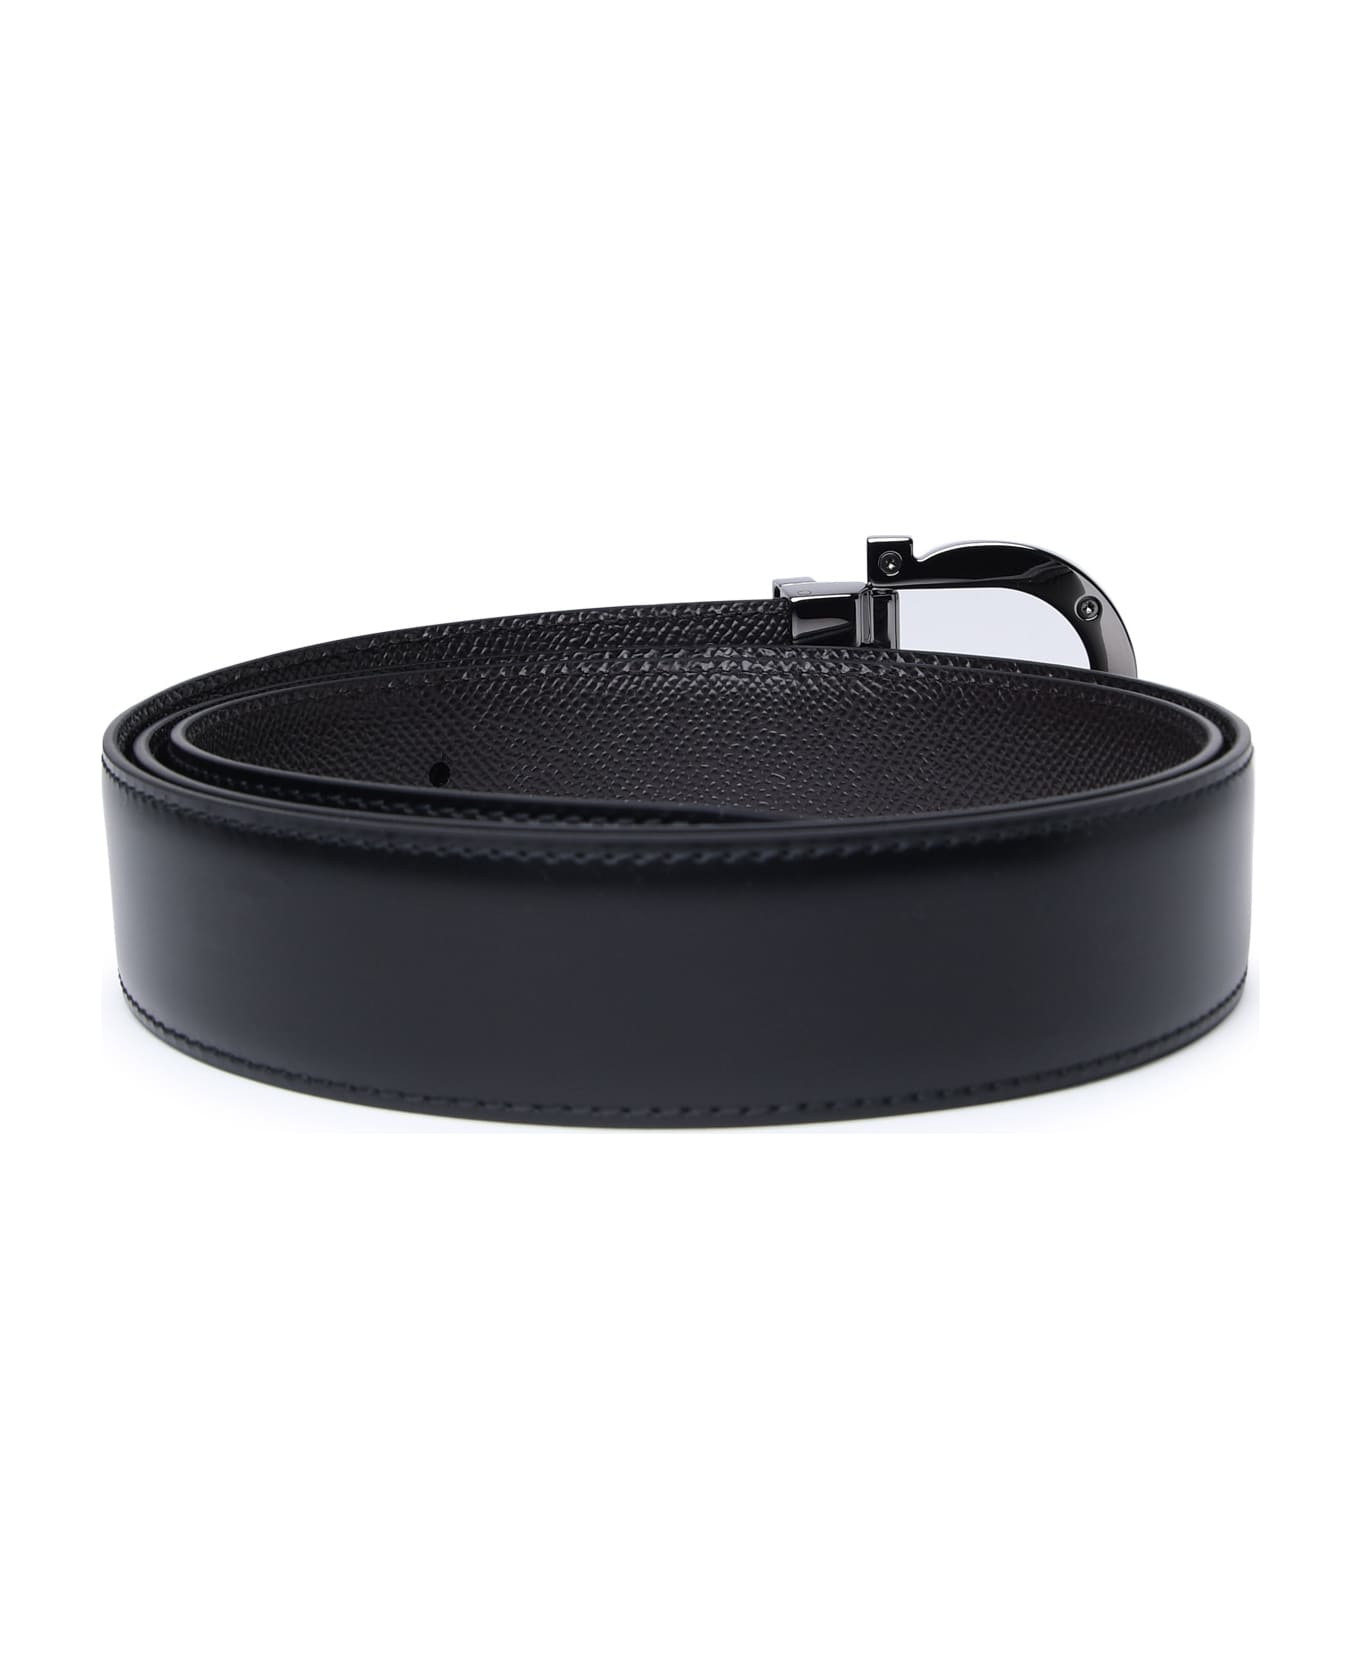 Ferragamo Black Leather Belt - Black ベルト